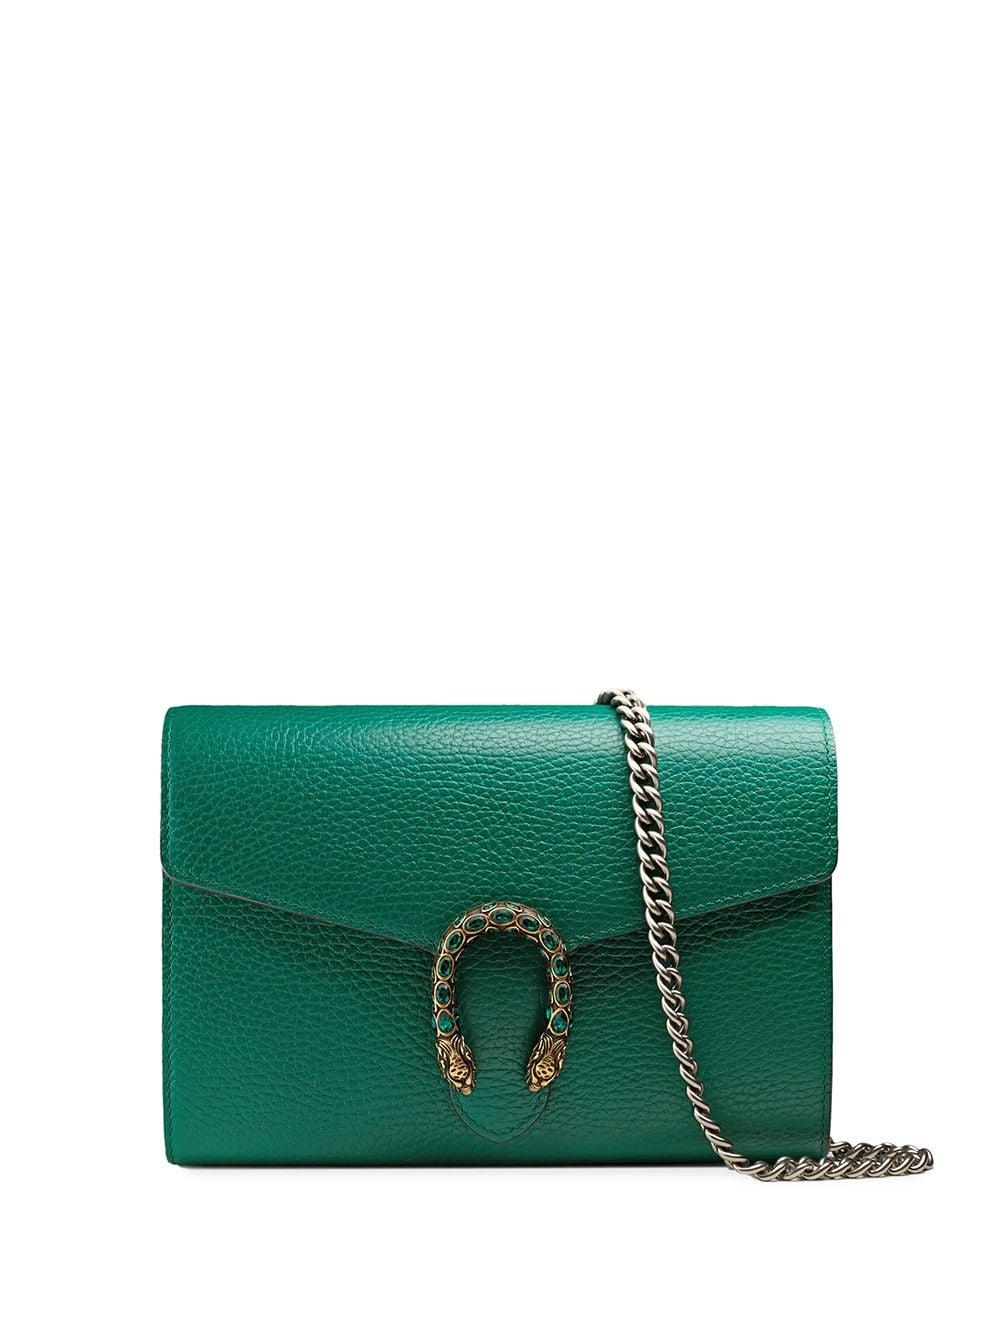 Gucci Dionysus Small Shoulder Bag Green